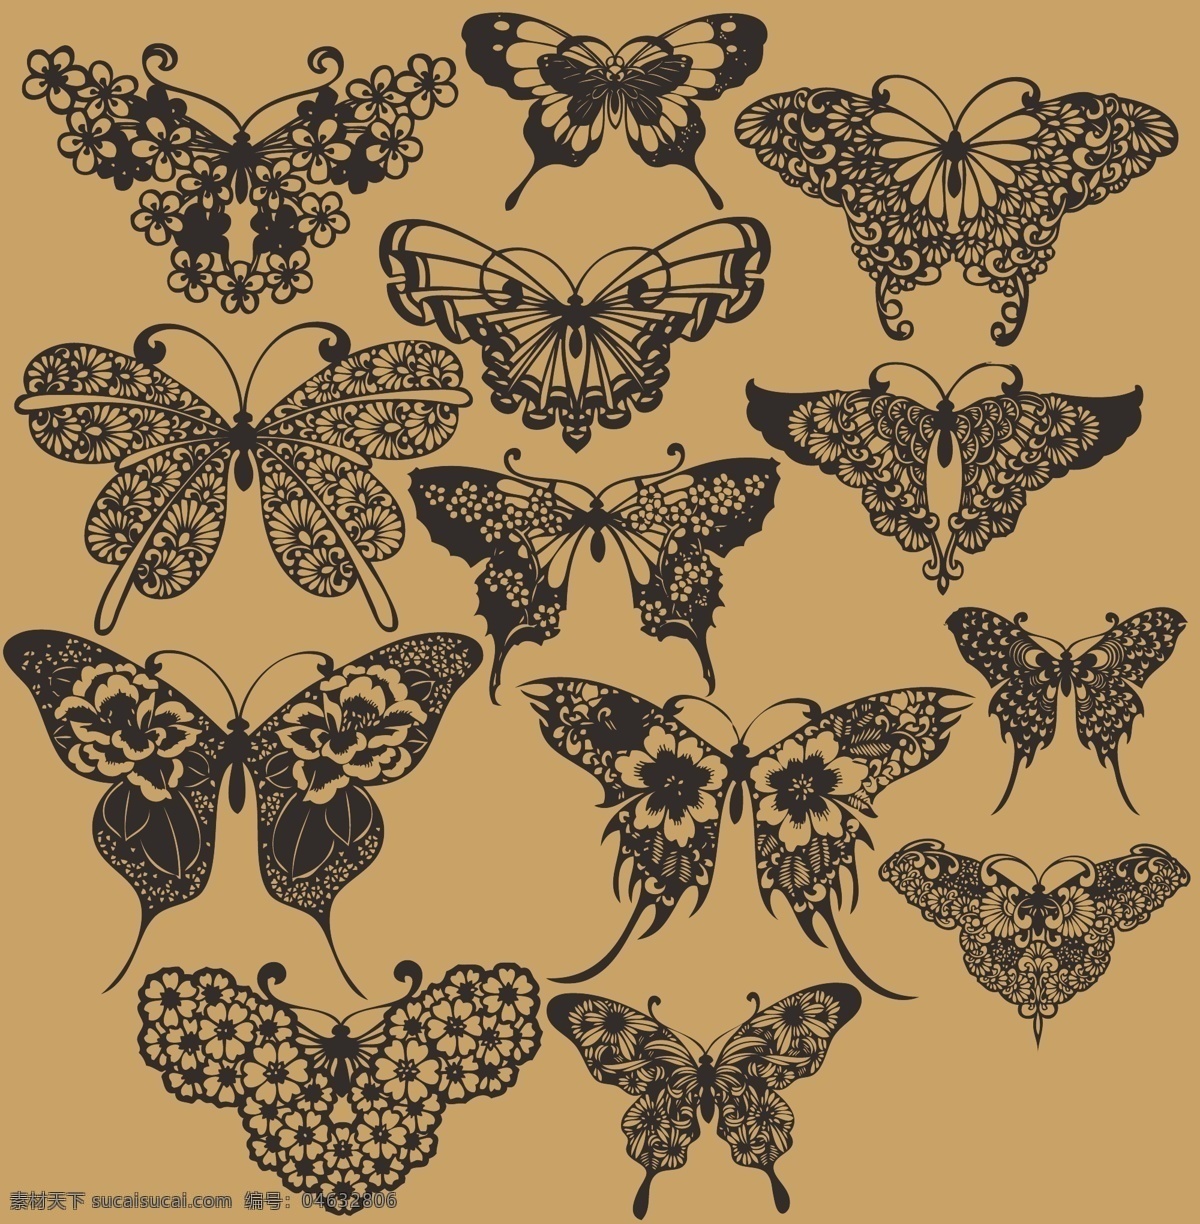 蝴蝶 抽象 线稿 白描 昆虫 矢量 矢量图 cs5 立体 自然 动物 翅膀 花朵 花 燕尾蝶 生物世界